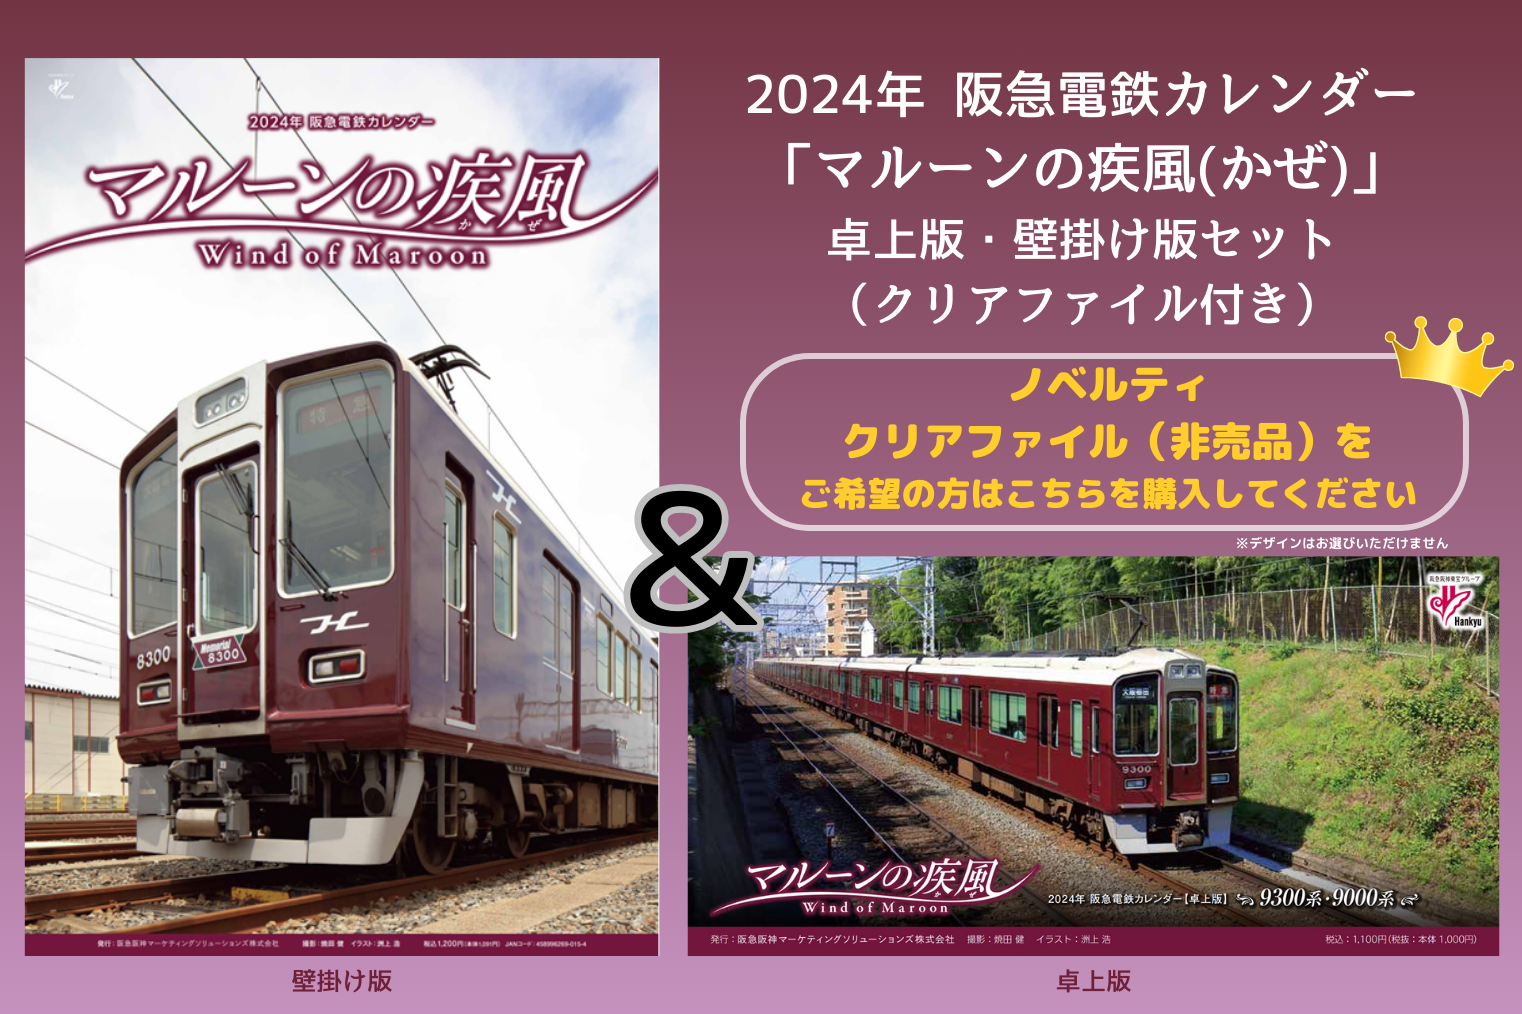 2024年阪急電鉄カレンダー ネットワーク全体の最低価格に挑戦 - 事務用品